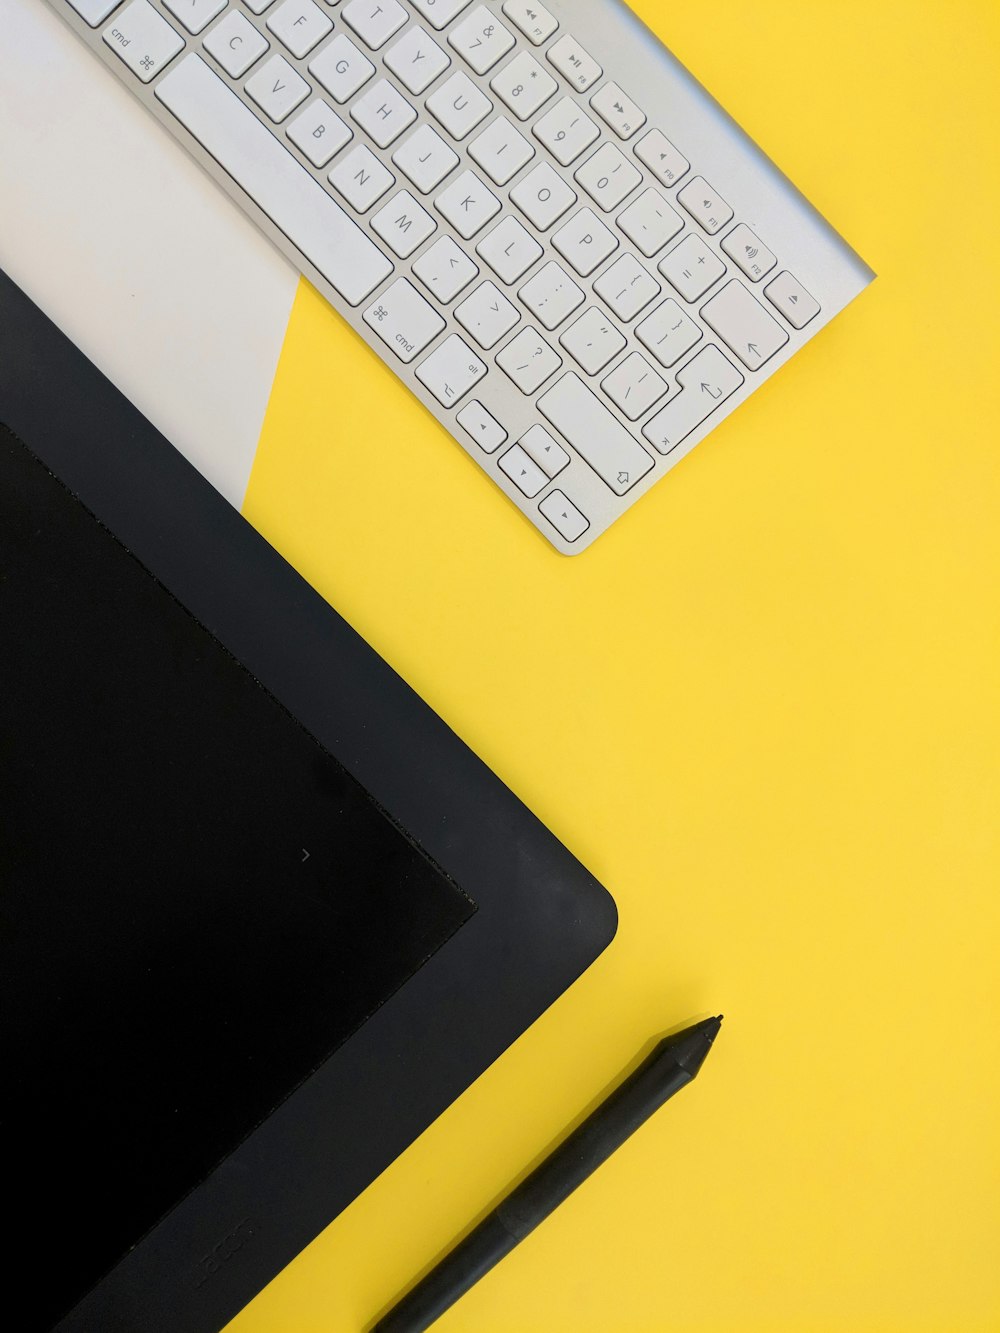 teclado inalámbrico gris de Apple junto a la tableta negra y el lápiz óptico